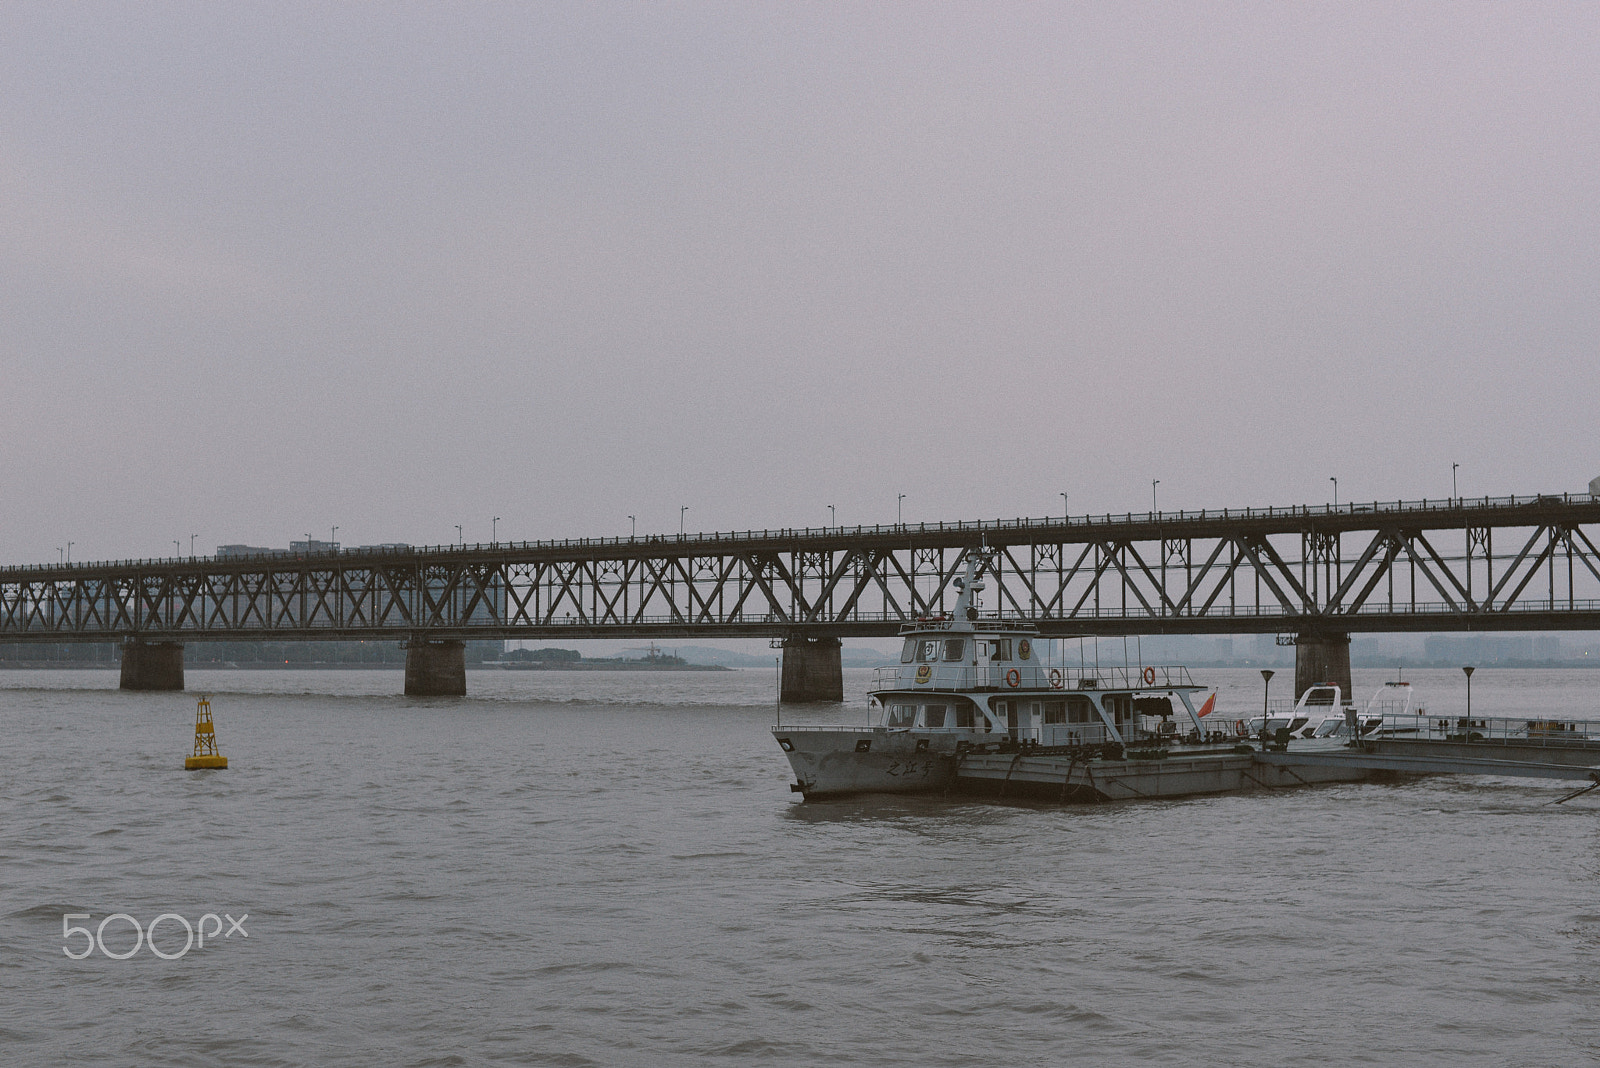 Nikon D610 + Sigma 50mm F1.4 EX DG HSM sample photo. Qiantang river bridge photography